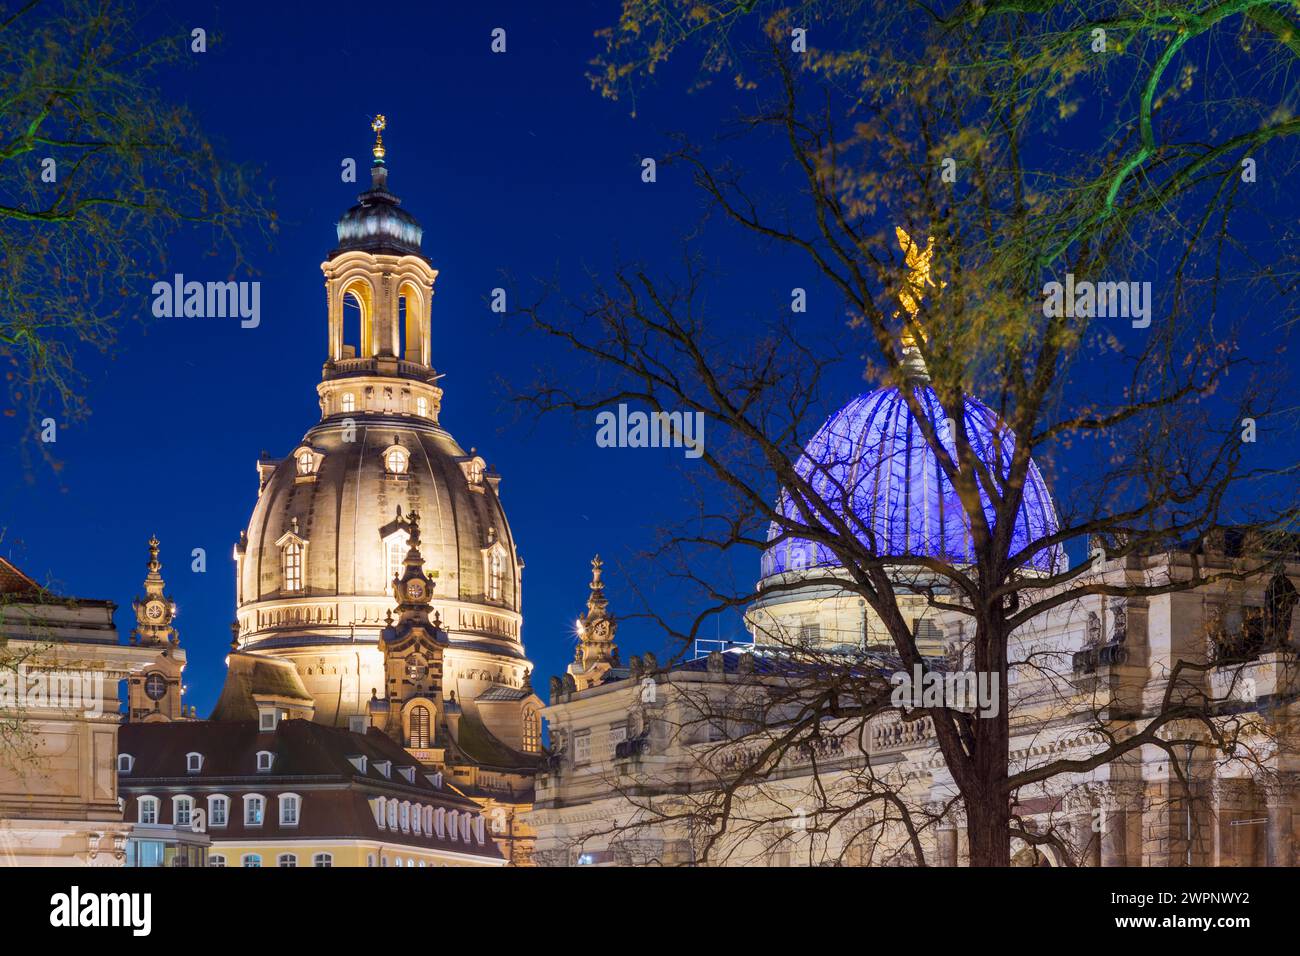 Dresde, église Frauenkirche, dôme de verre du bâtiment principal - familièrement appelé 'Lemon Squeezer' de l'Académie des Beaux-Arts de Dresde, Saxe, Allemagne Banque D'Images